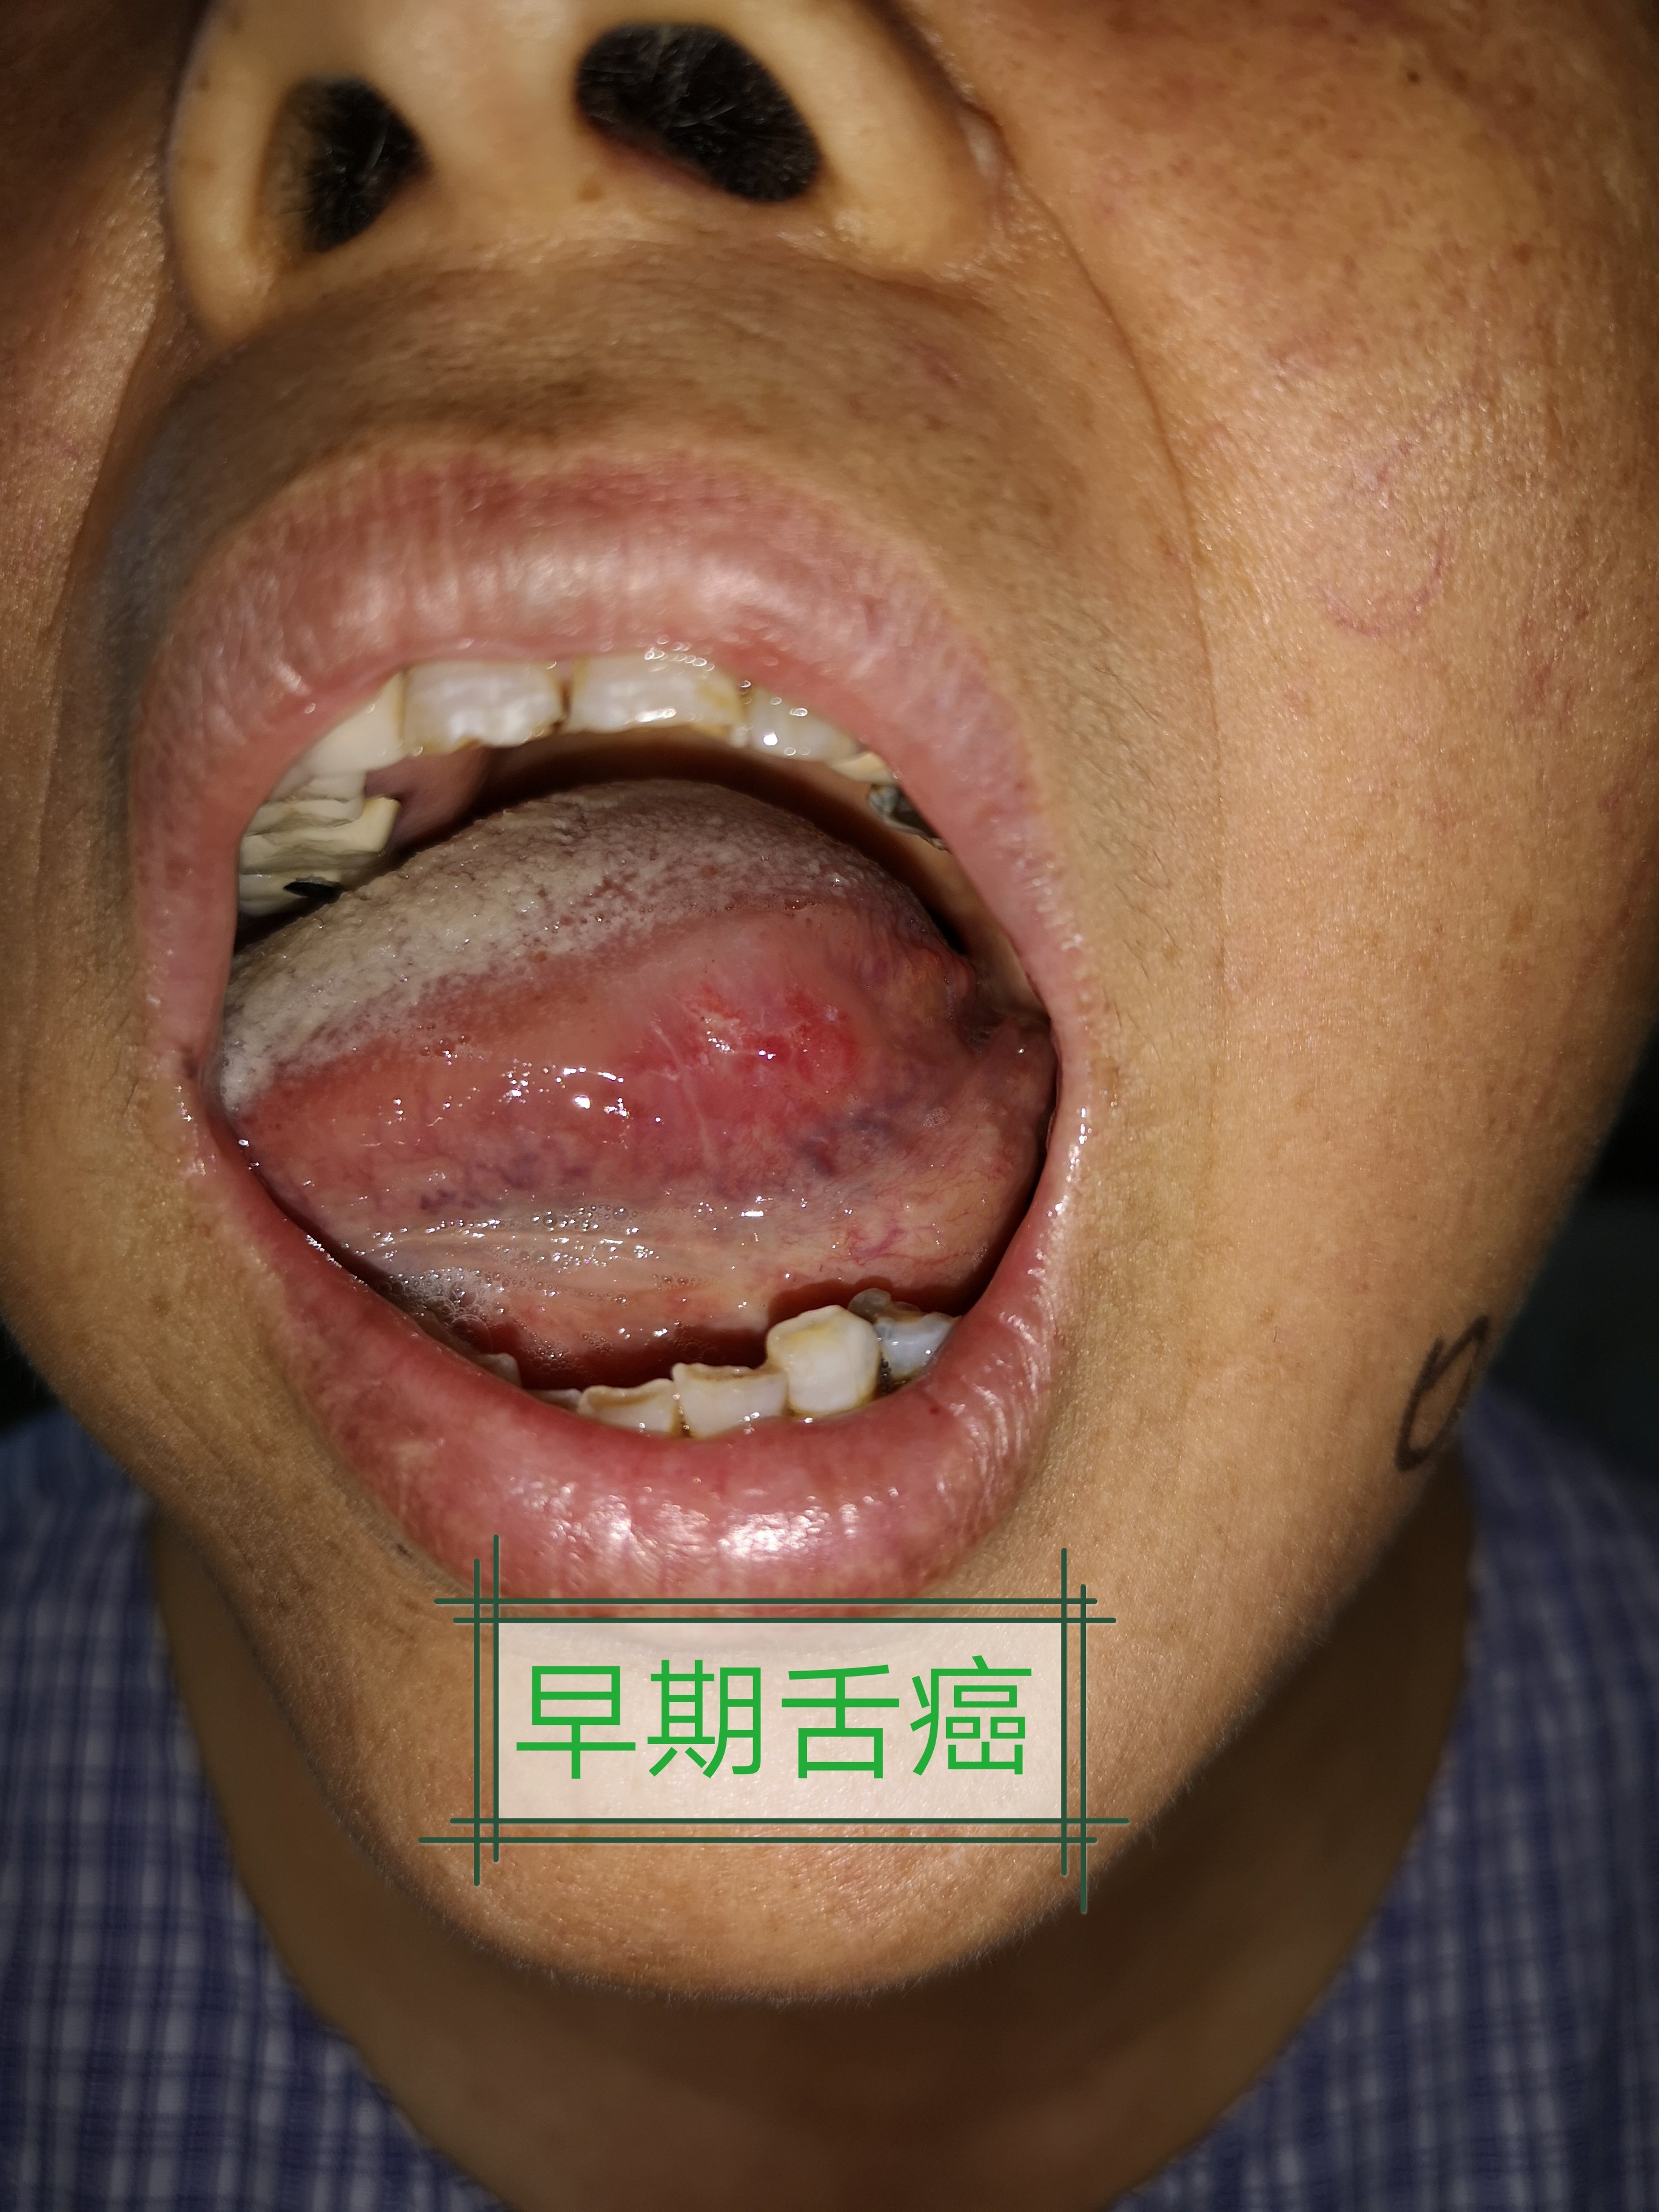 烂牙,不良修复体等长期慢性刺激,也可由舌白斑,扁平苔藓等良性疾病